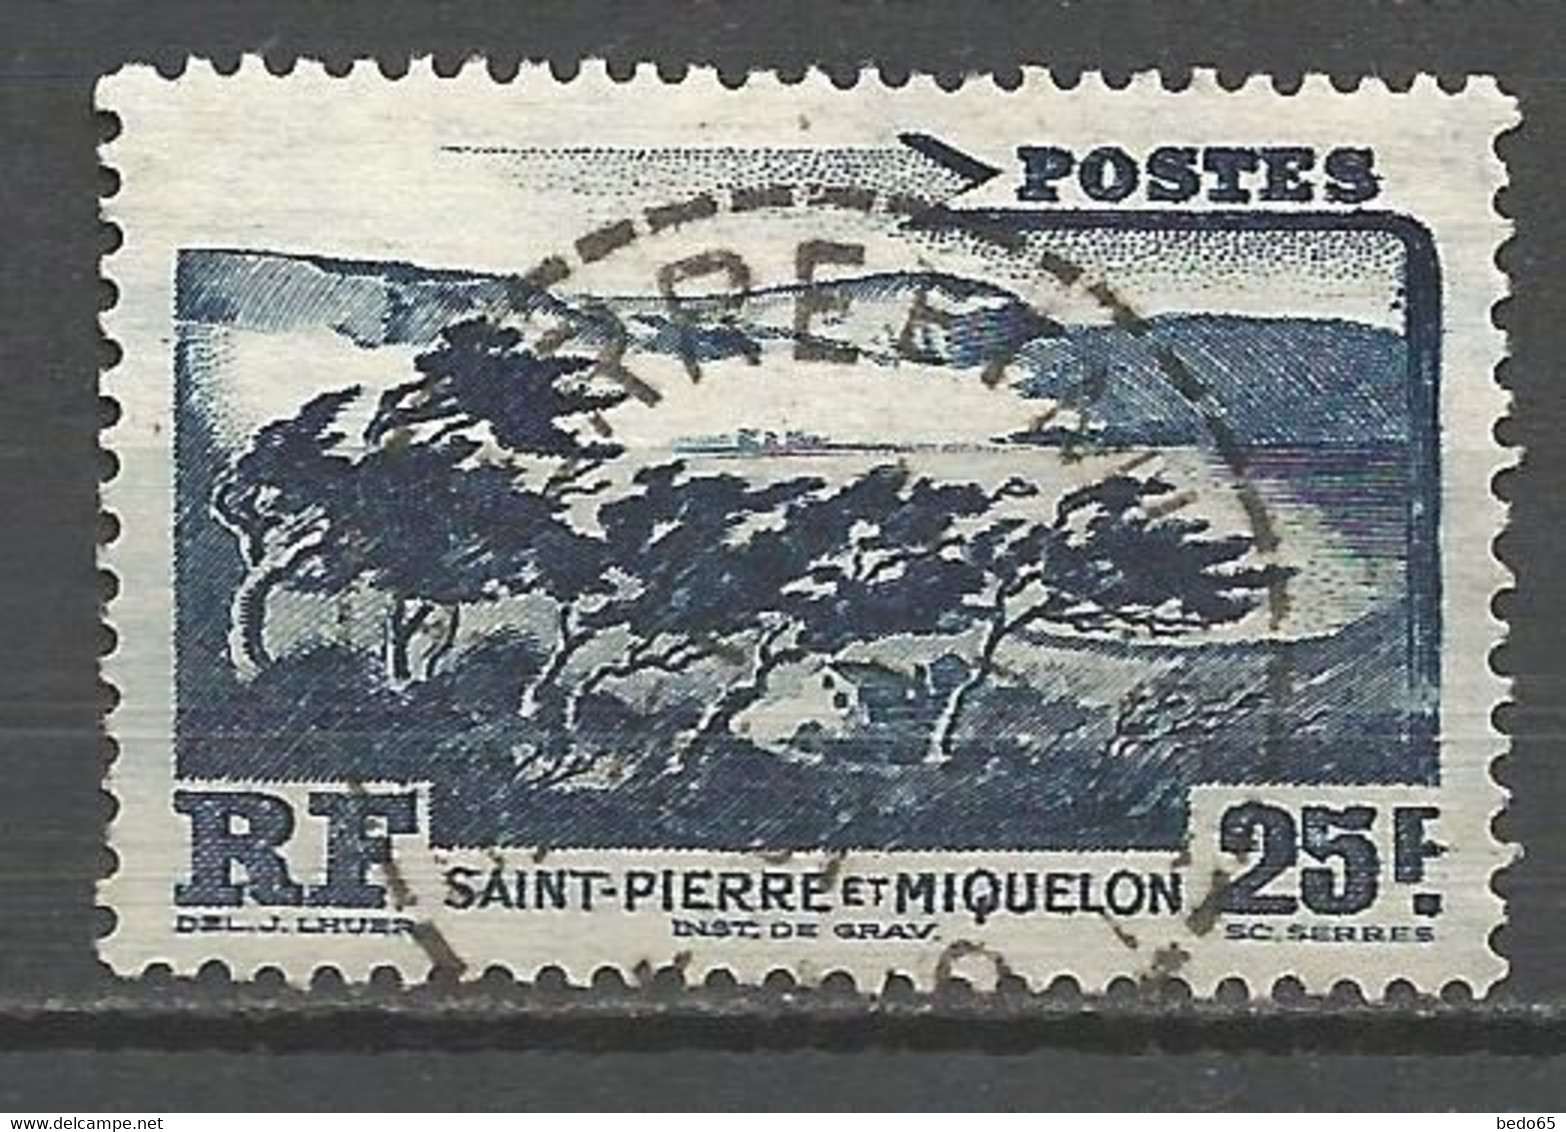 ST PIERRE ET MIQUELON N° 343 CACHET ST P ET MIQUELON / Tres Bon Centrage - Used Stamps